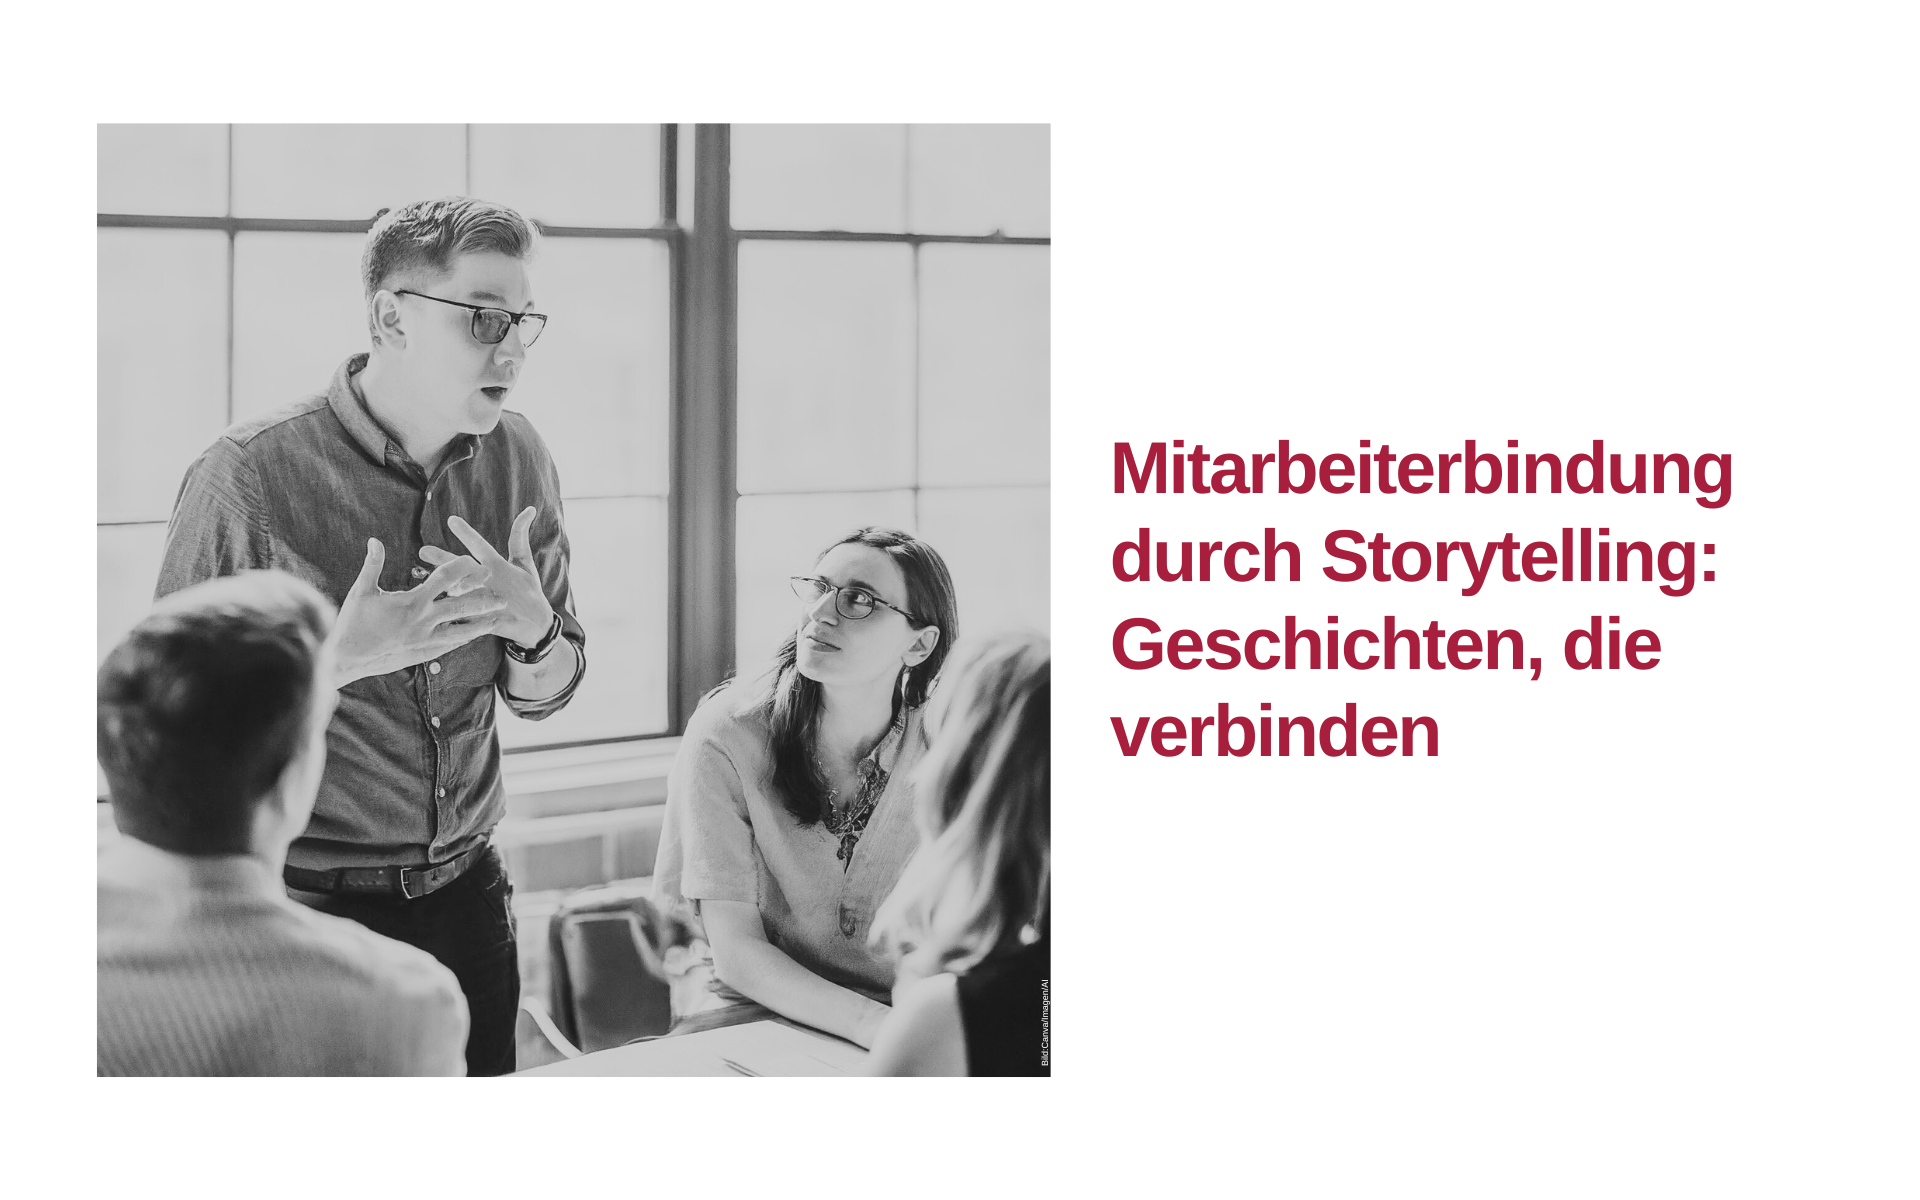 Mitarbeiterbindung durch Storytelling: Geschichten, die verbinden